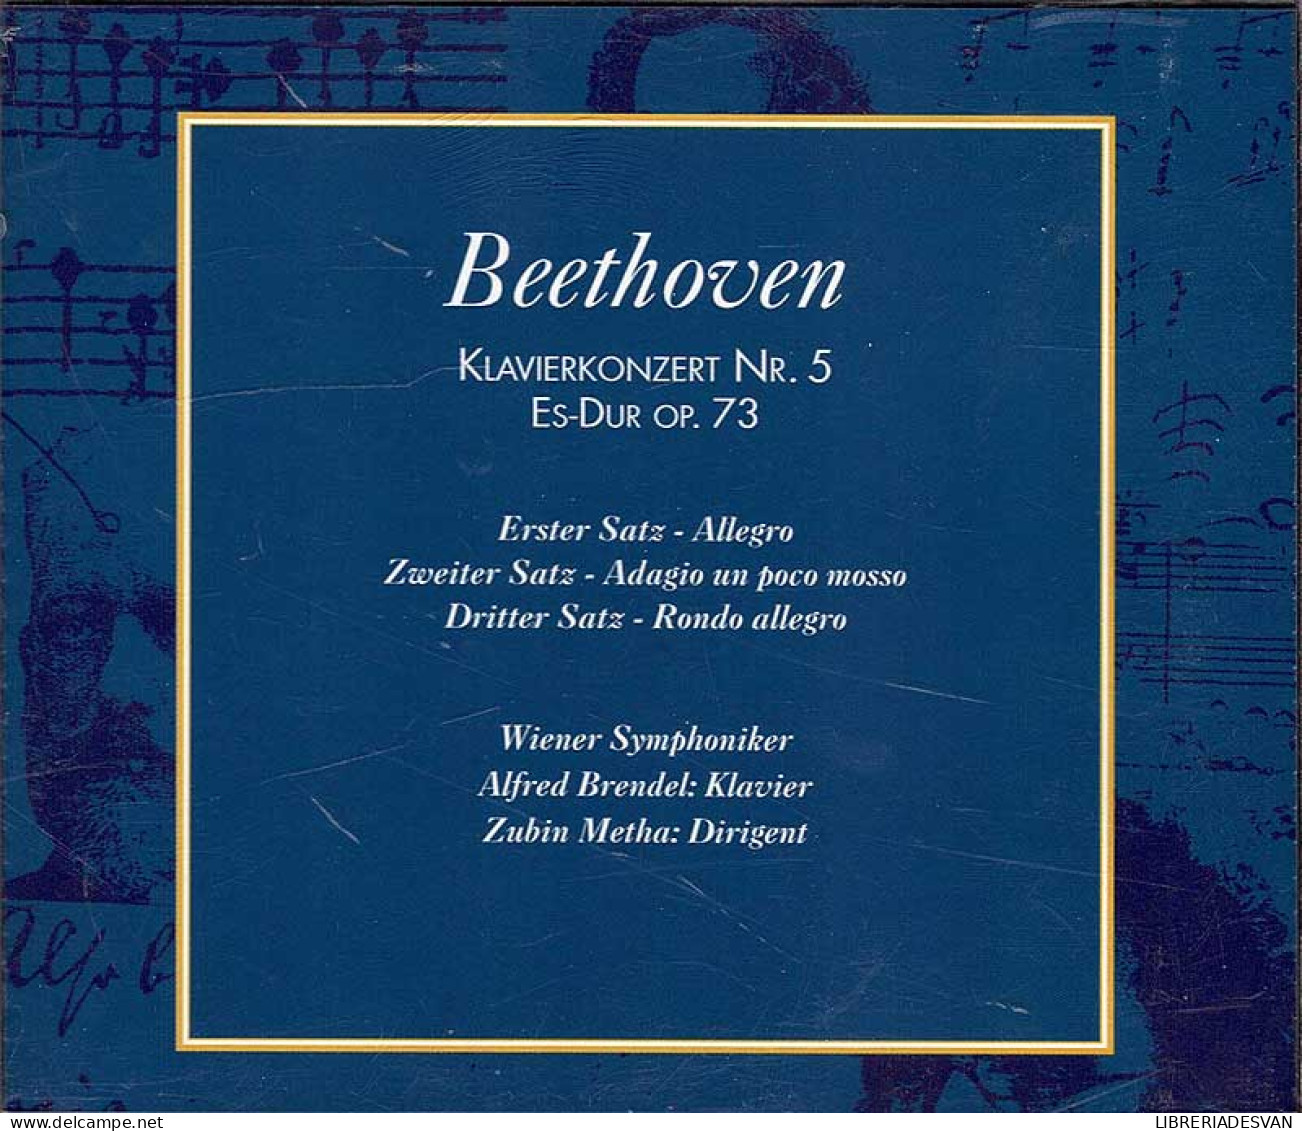 Beethoven - Klavierkonzert No. 5 Es-Dur Opus 73. CD - Klassik